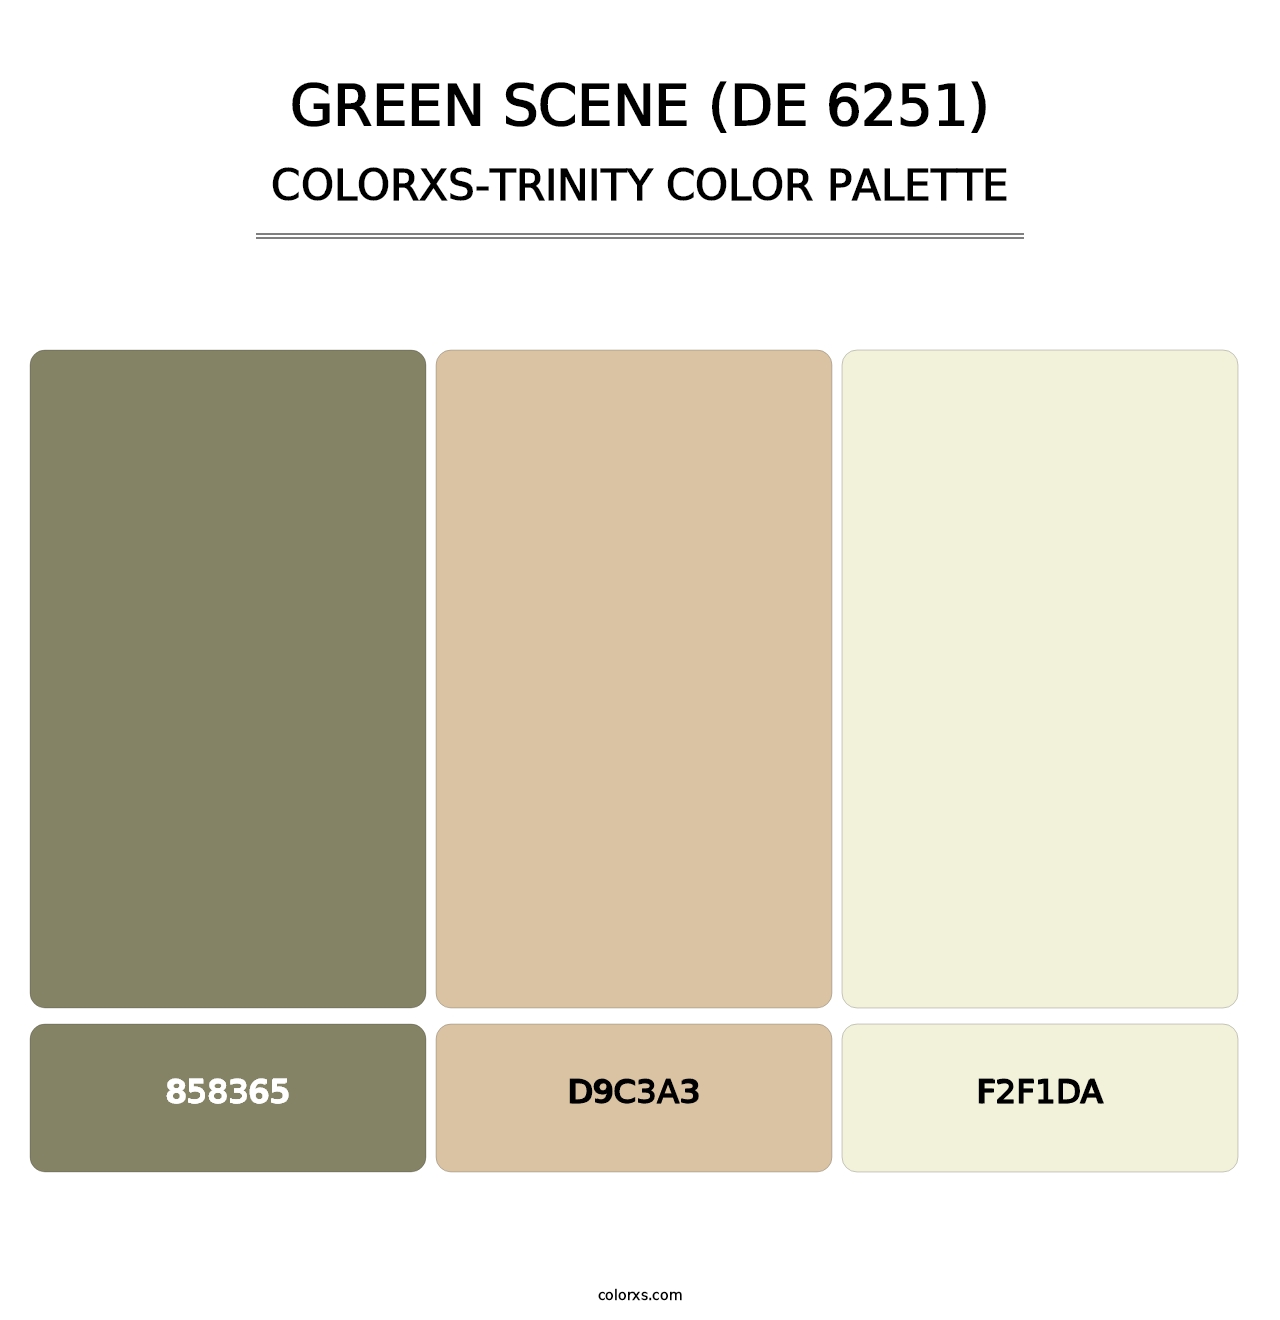 Green Scene (DE 6251) - Colorxs Trinity Palette